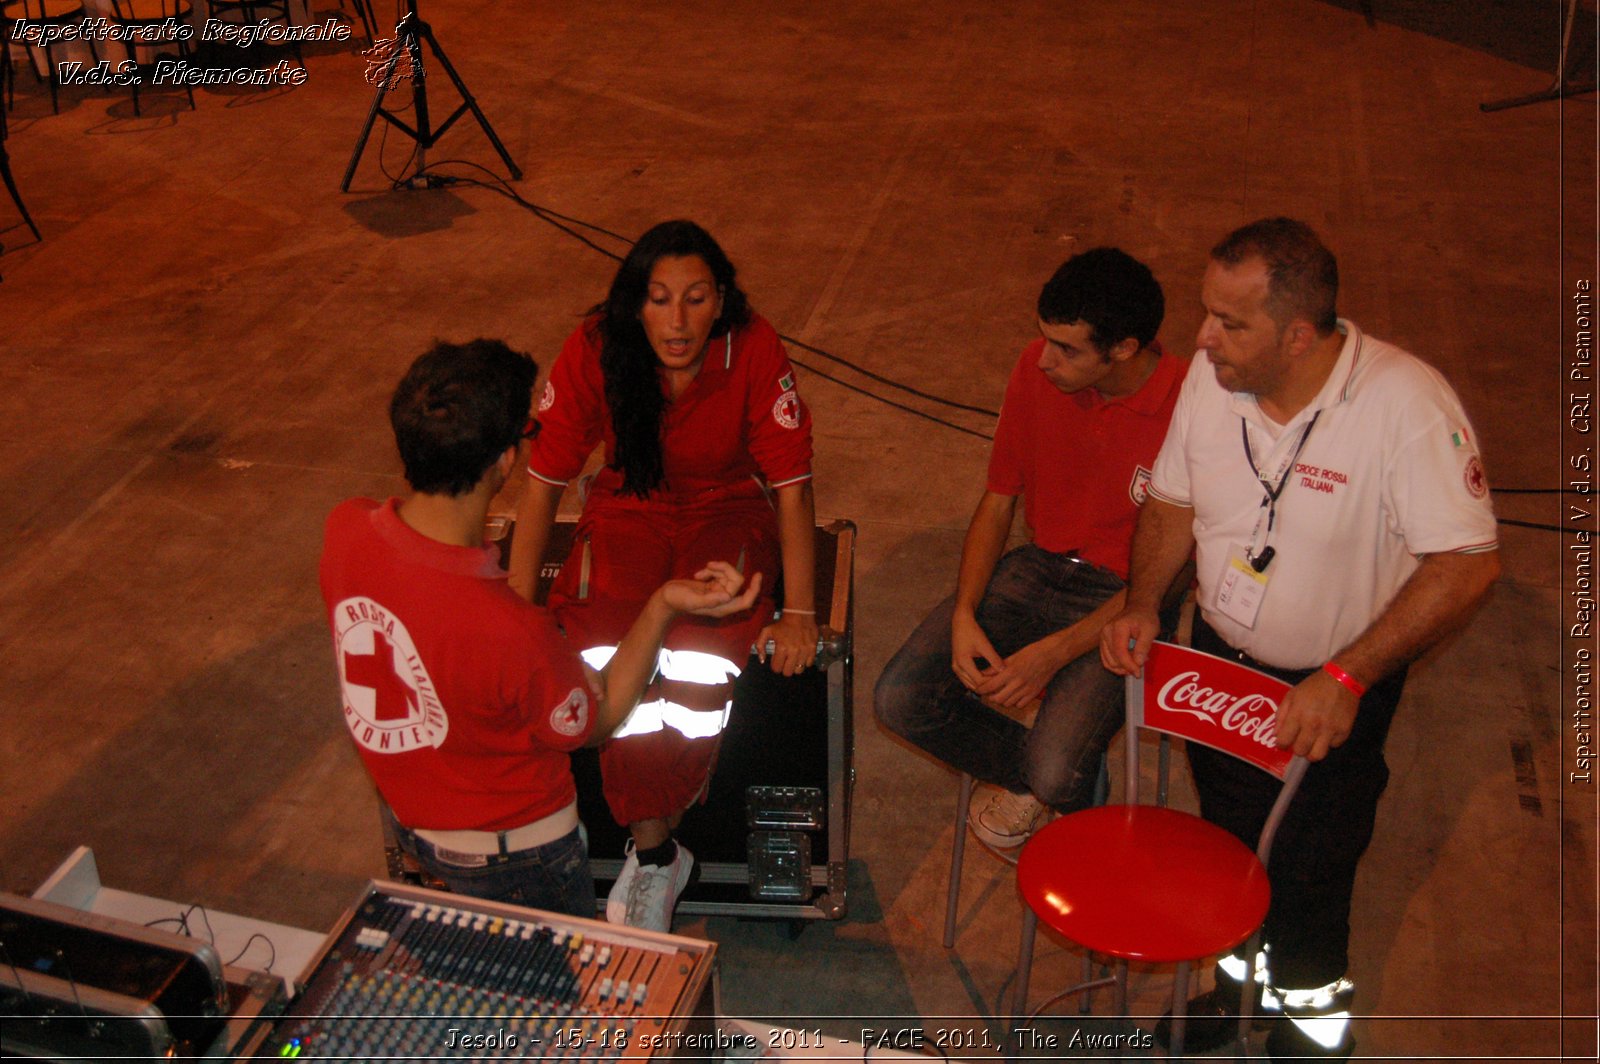 Jesolo - 15-18 settembre 2011 - FACE 2011, The Awards -  Croce Rossa Italiana - Ispettorato Regionale Volontari del Soccorso Piemonte